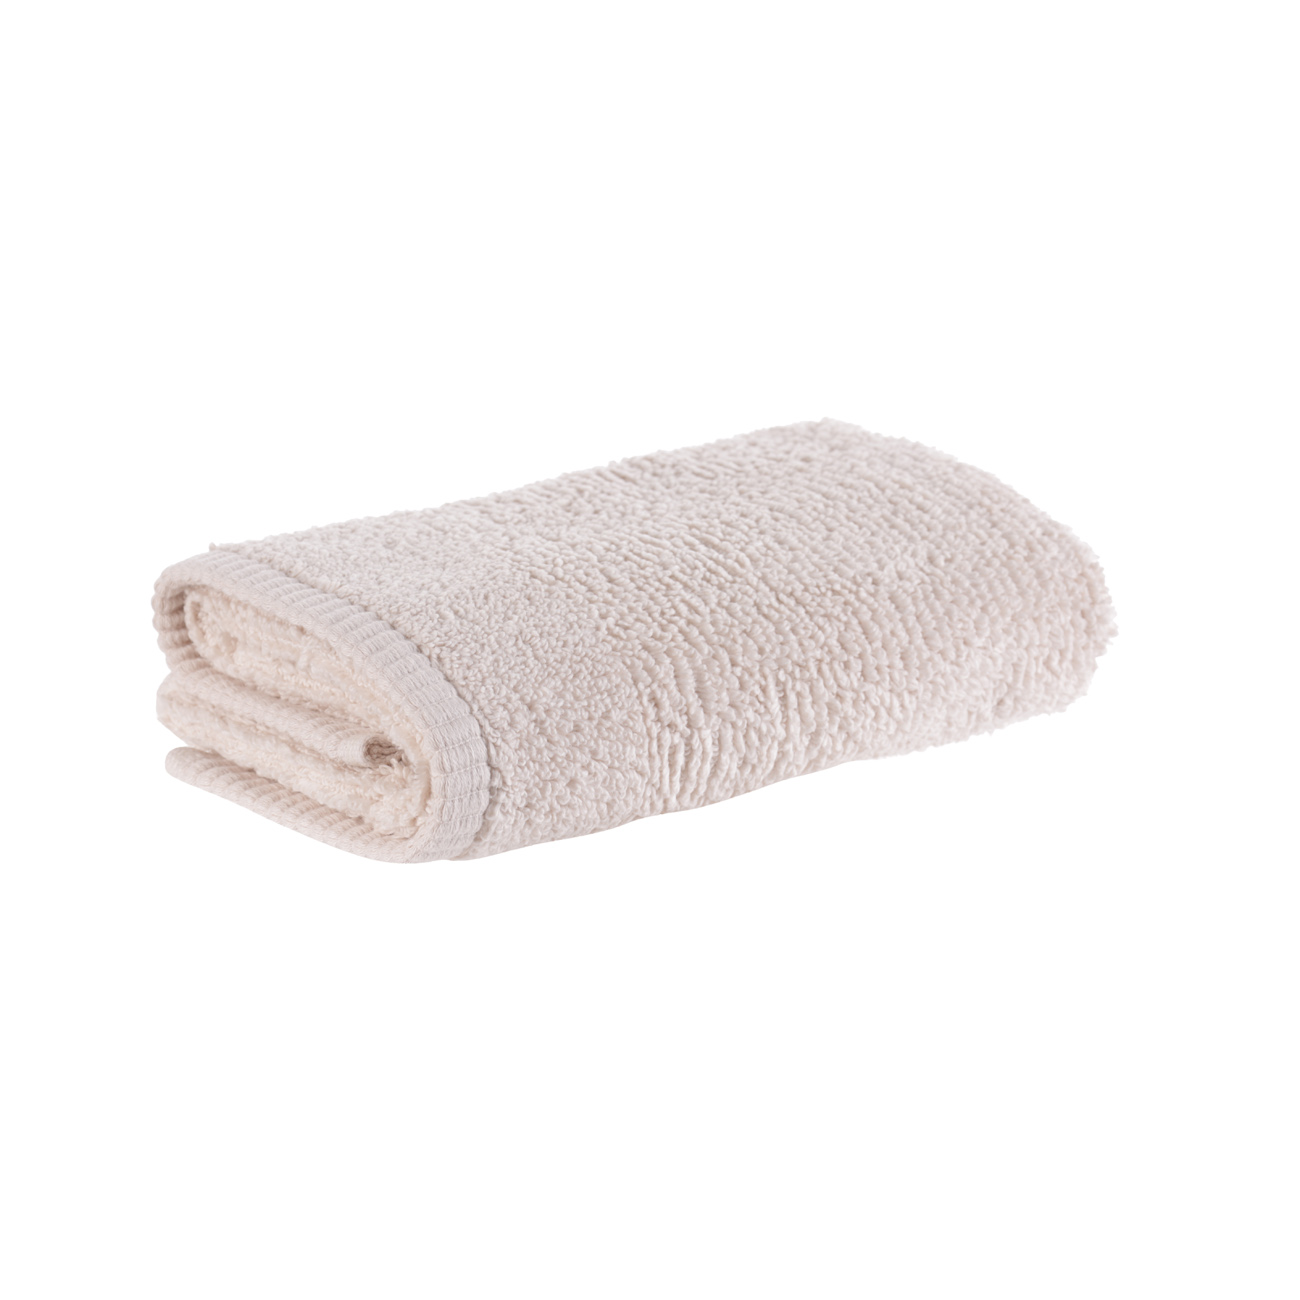 Towel, 40x60 cm, cotton, beige, Terry cotton изображение № 3